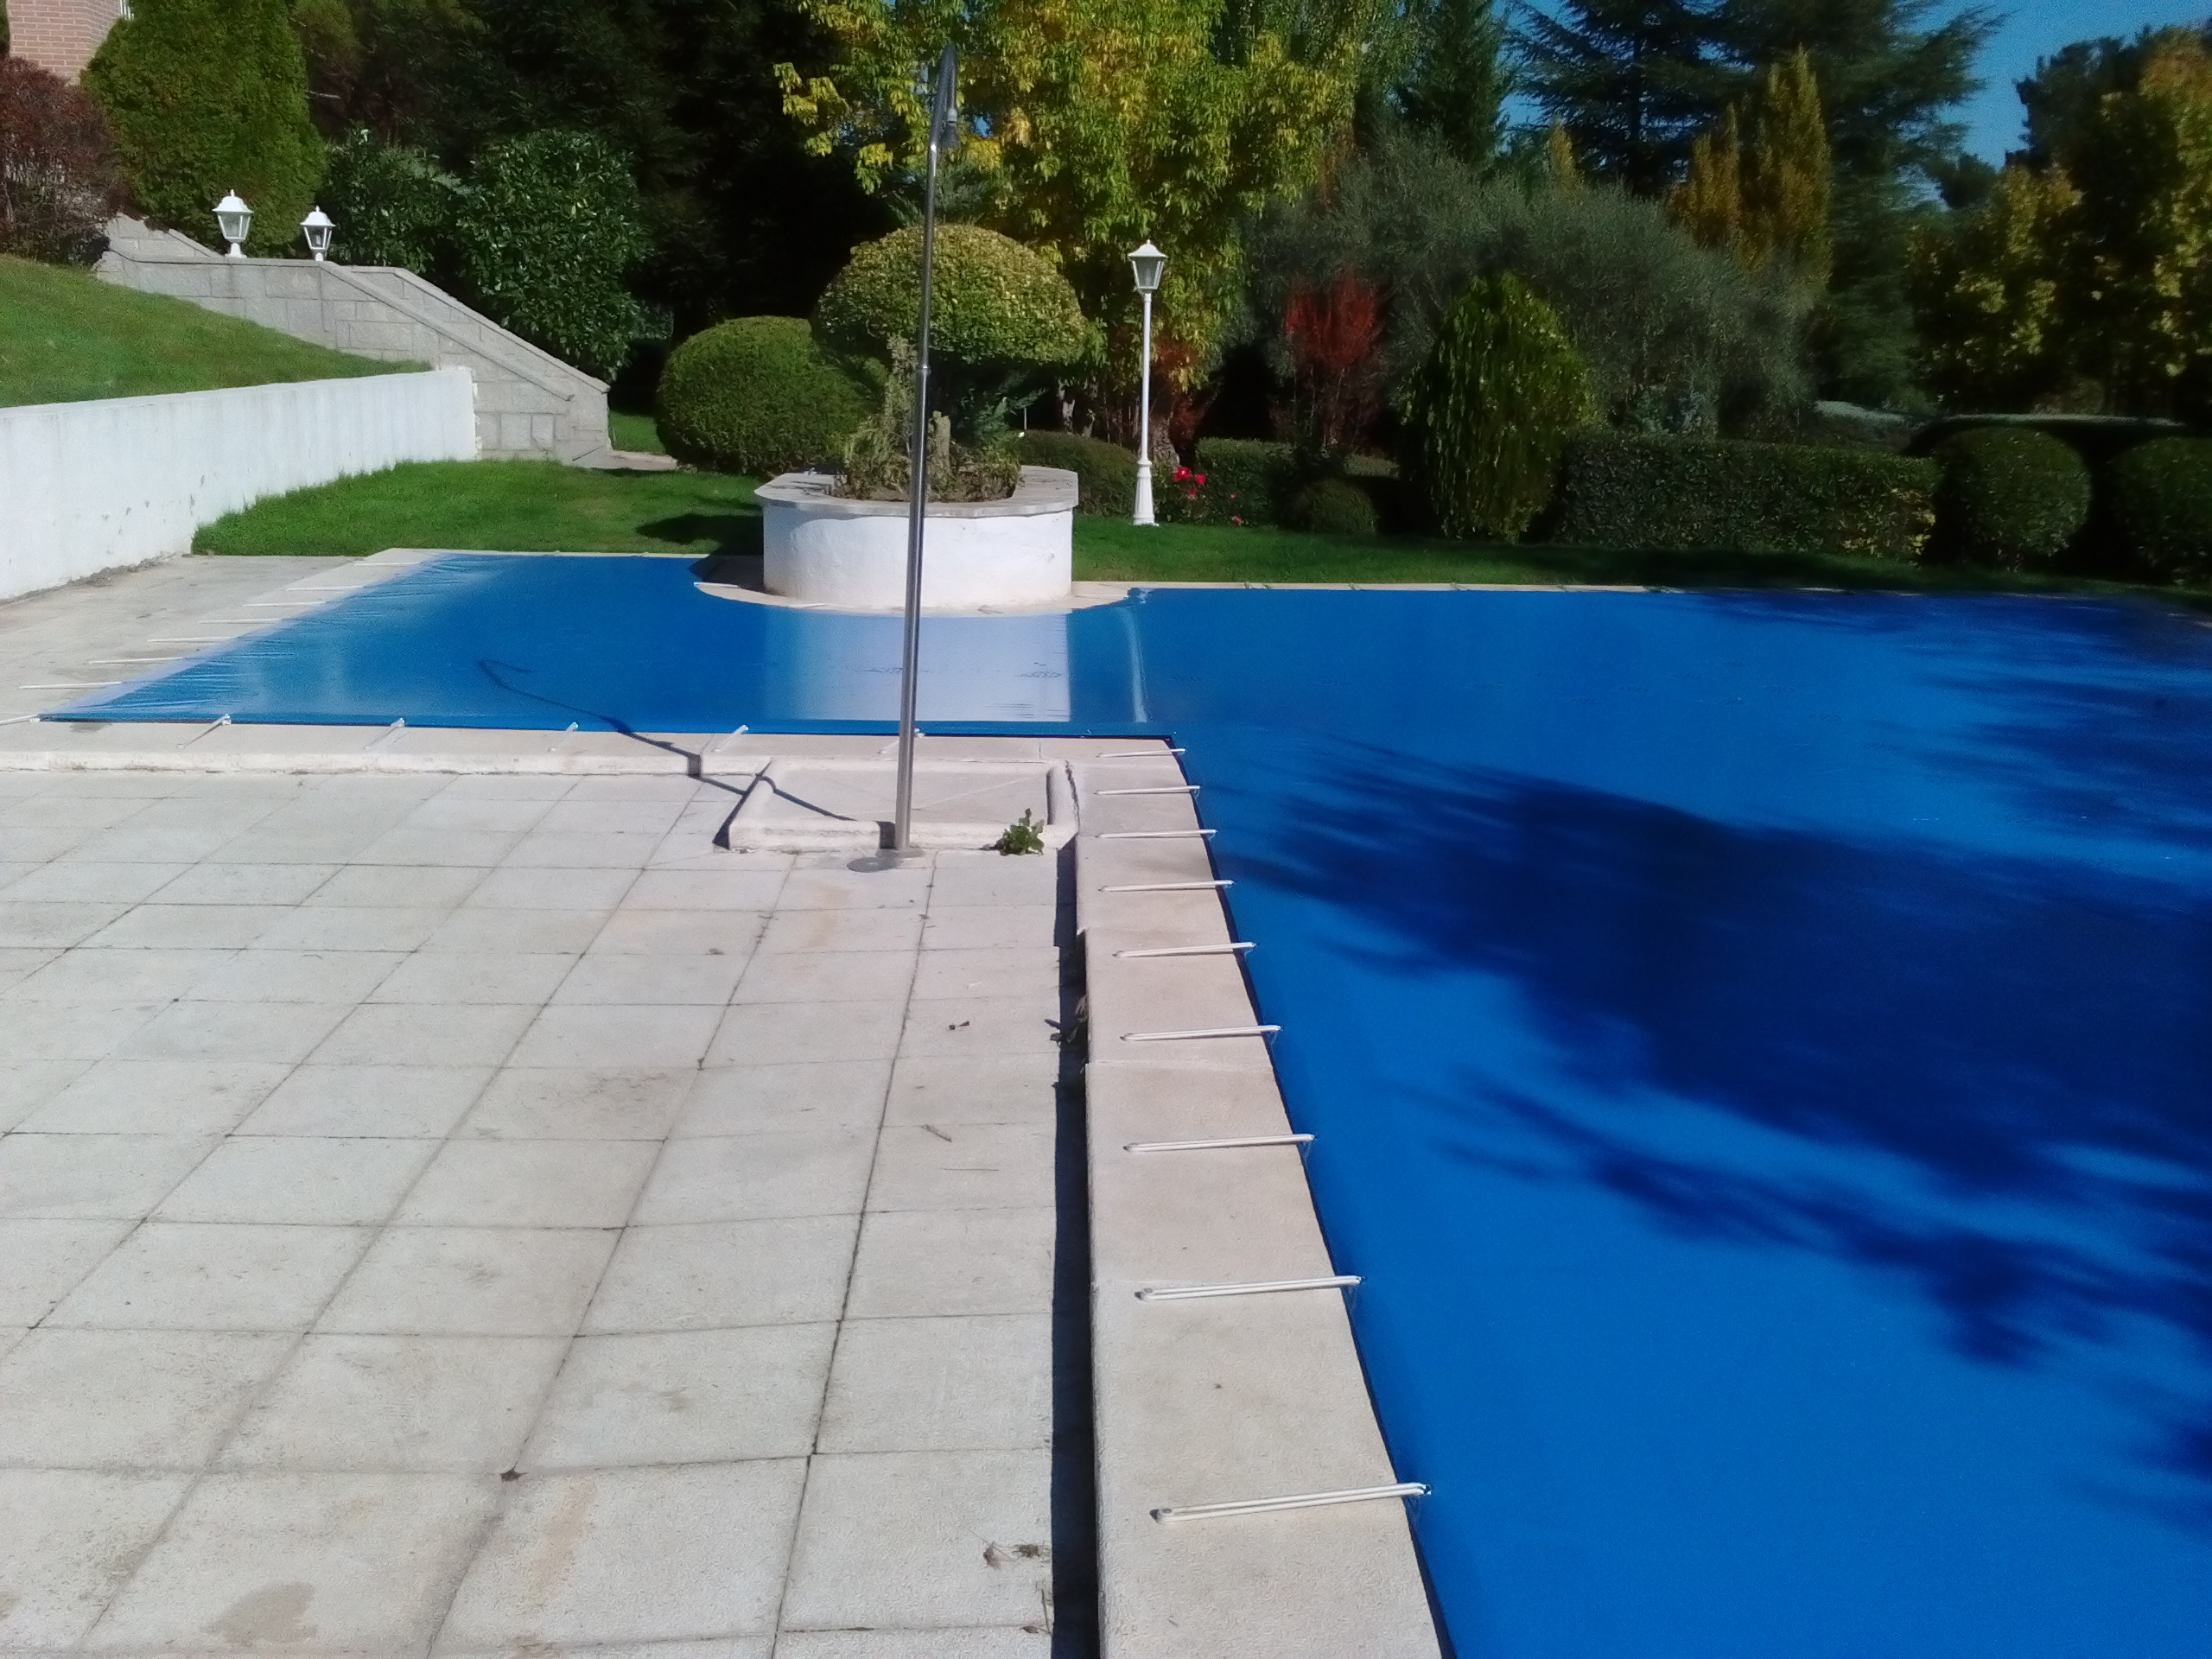 De ninguna manera Tina cable Cobertor de protección, para piscina Coinpol modelo Bahía 1. - Piscilona